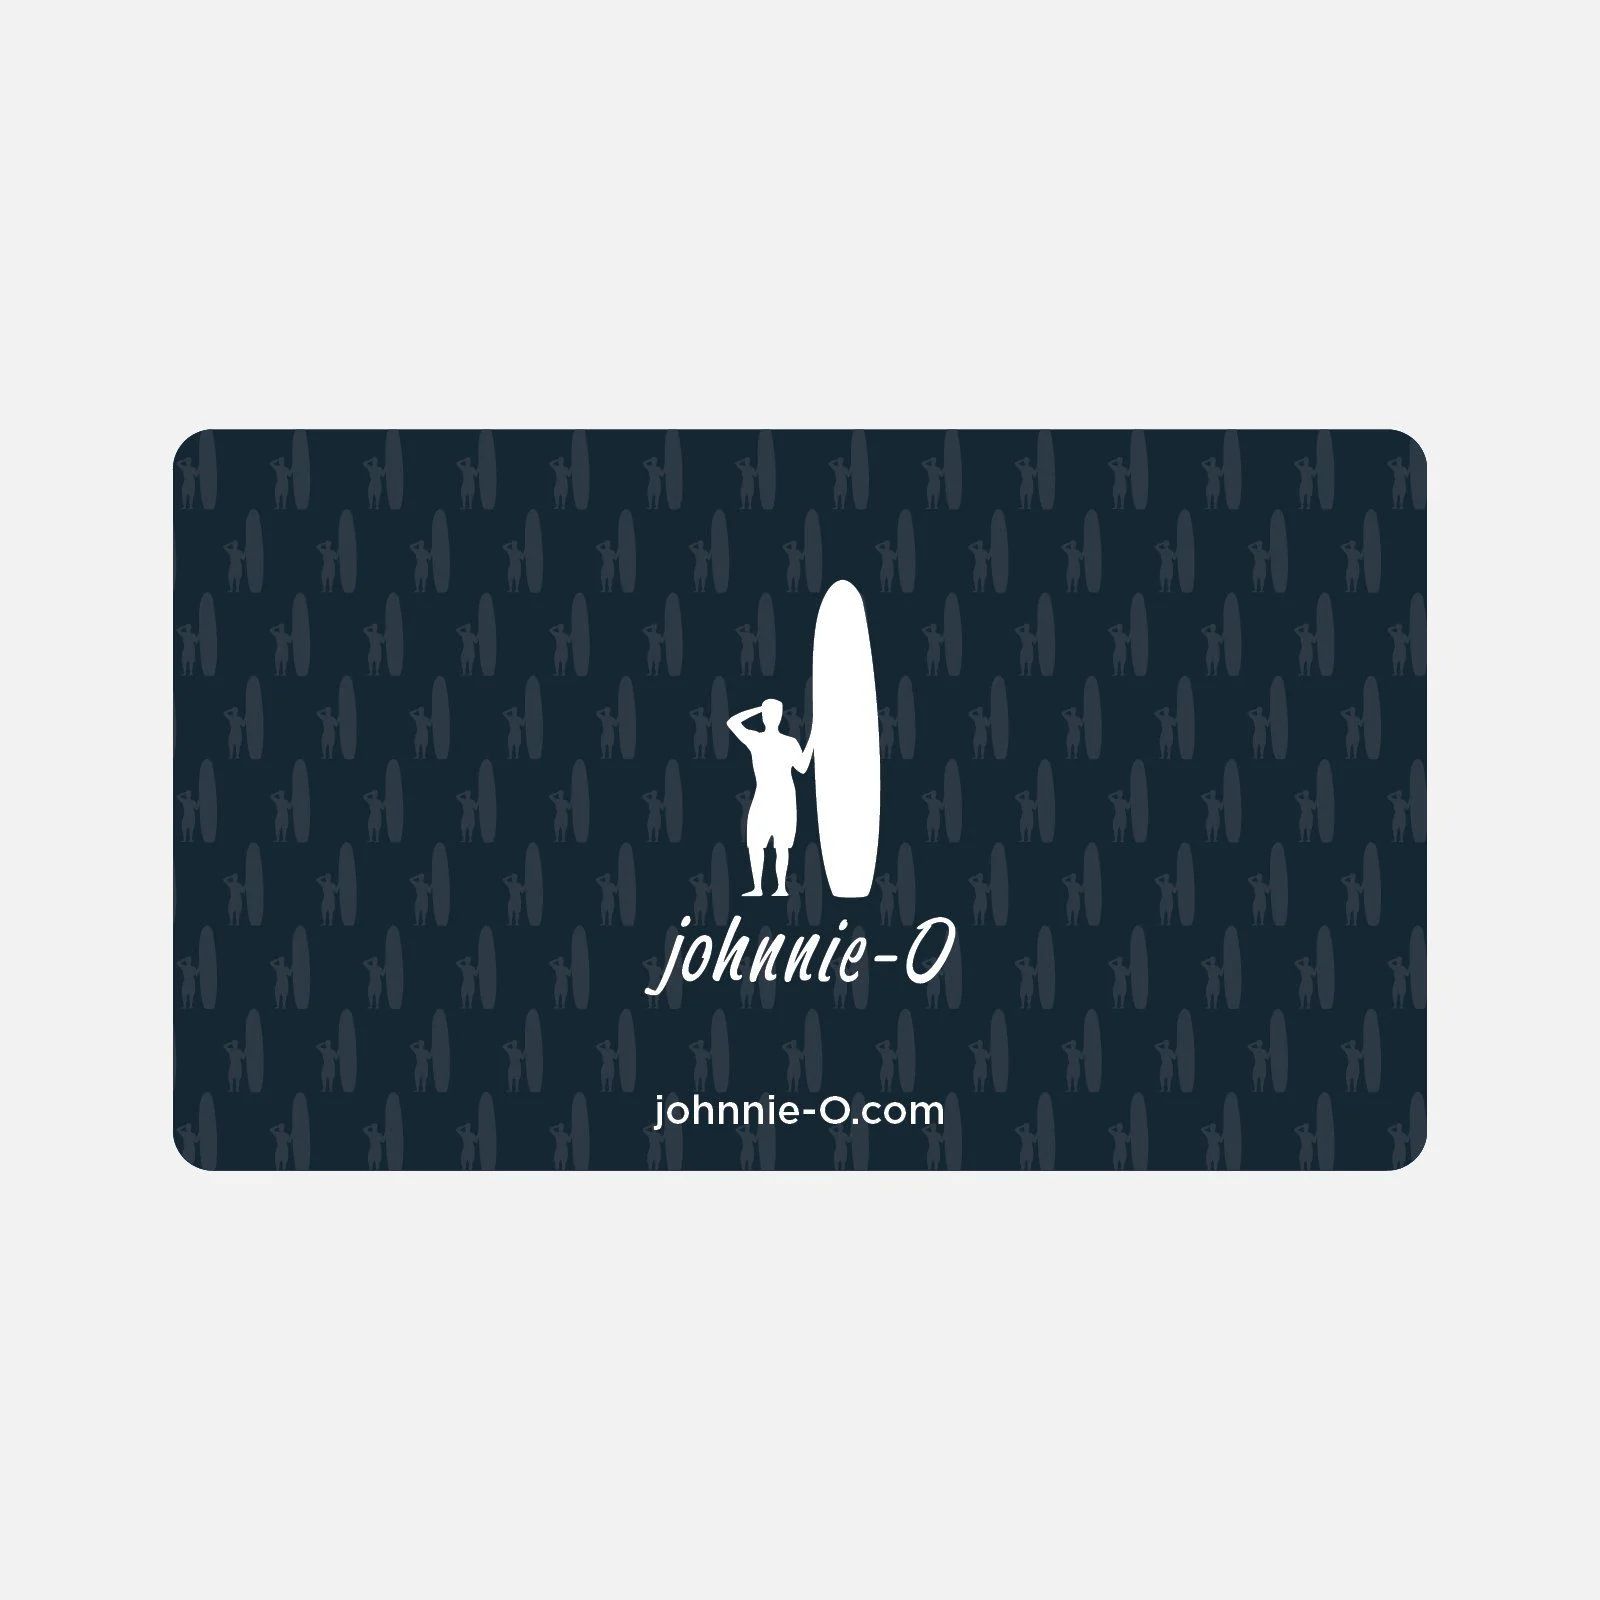 johnnie-O E-Gift Card | johnnie O